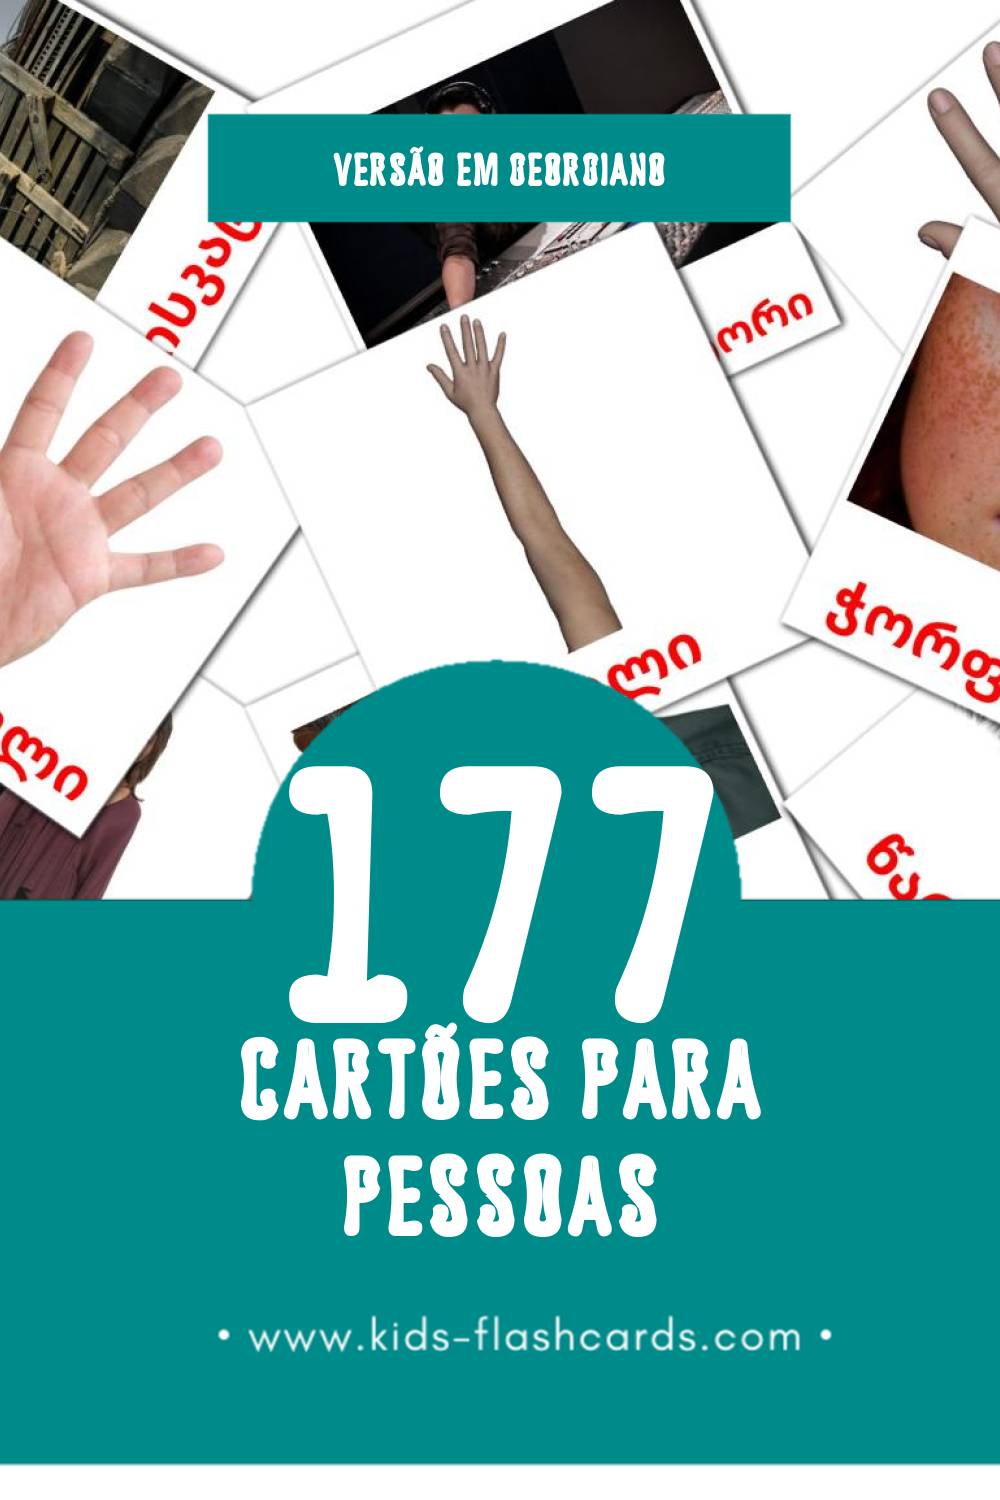 Flashcards de ადამიანები Visuais para Toddlers (177 cartões em Georgiano)